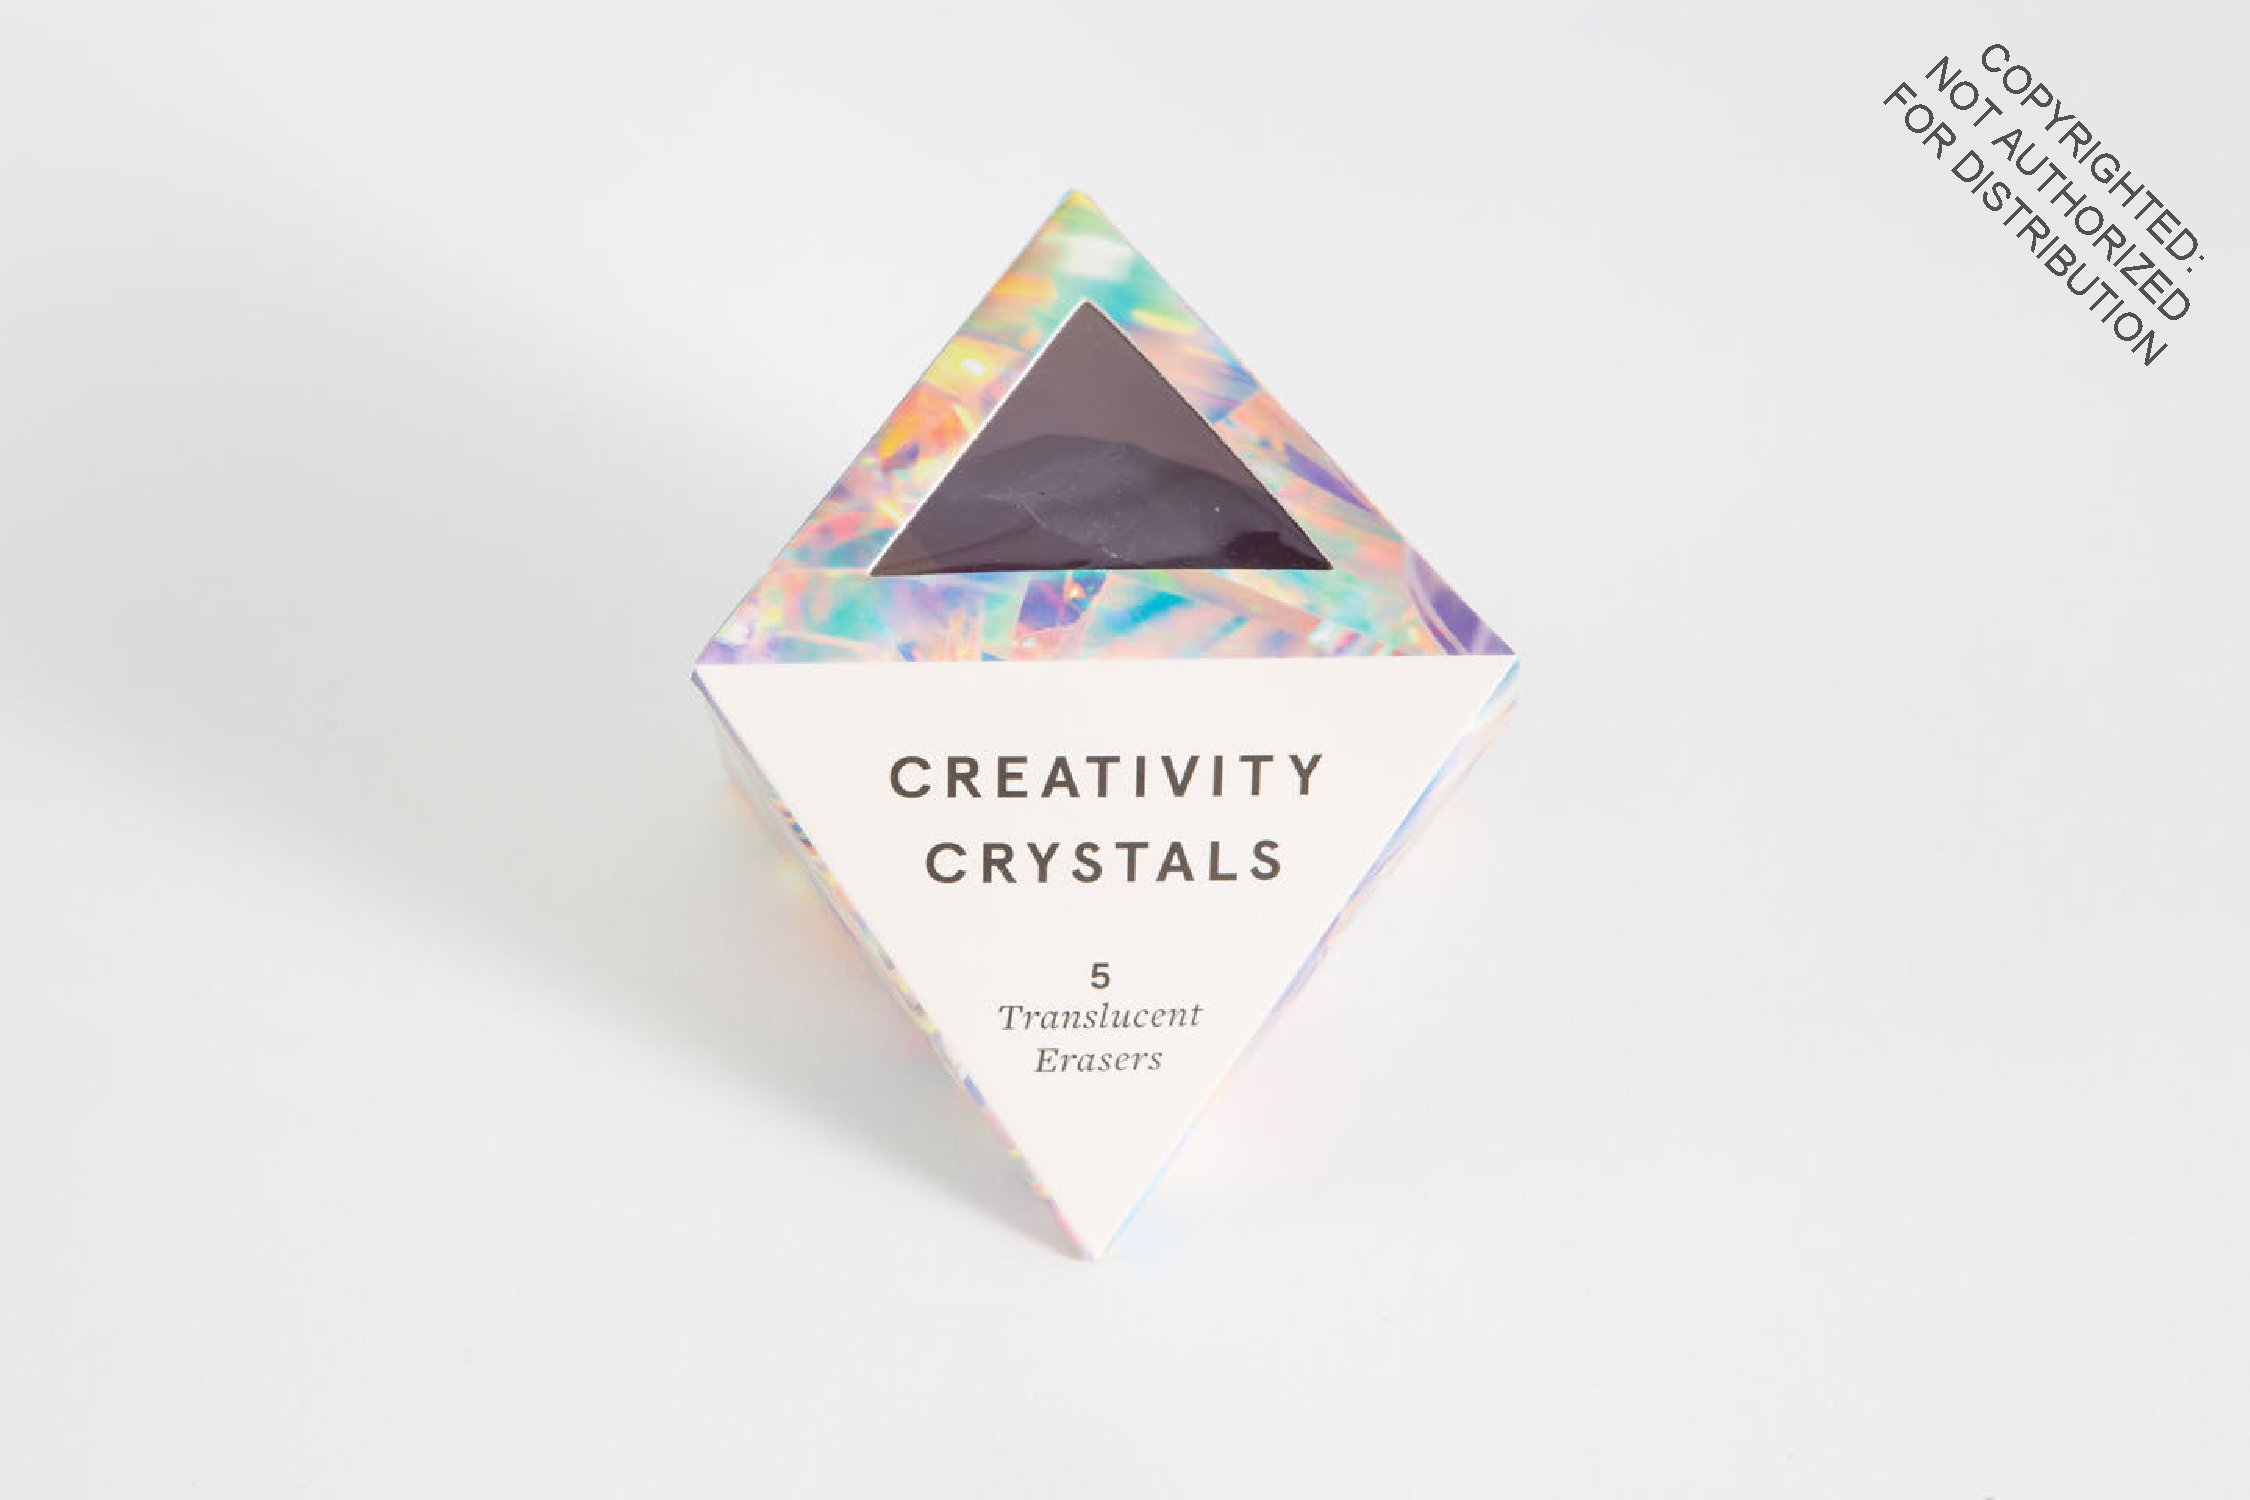 Creativity Crystals